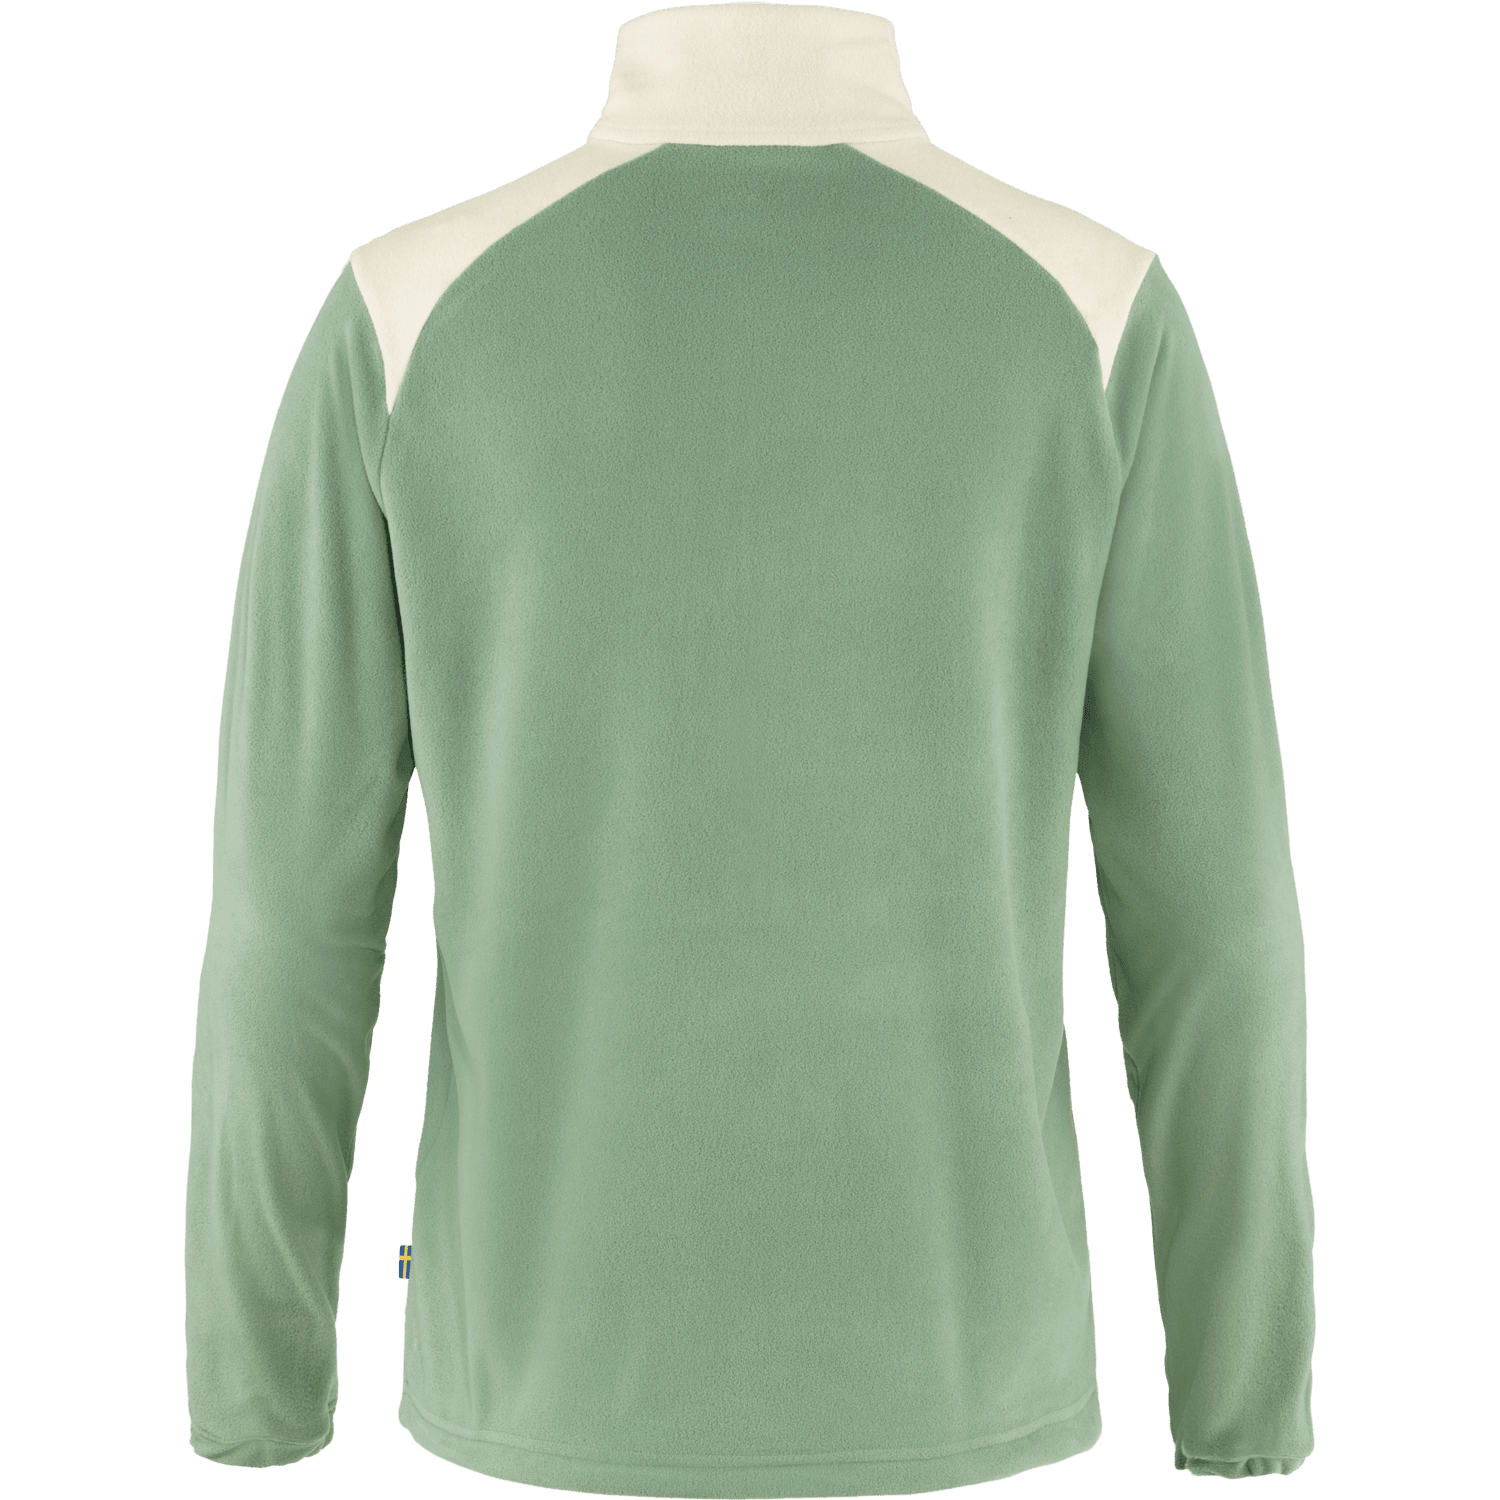 Fjällräven - W's Vardag Lite Fleece - Recycled polyester - Weekendbee - sustainable sportswear